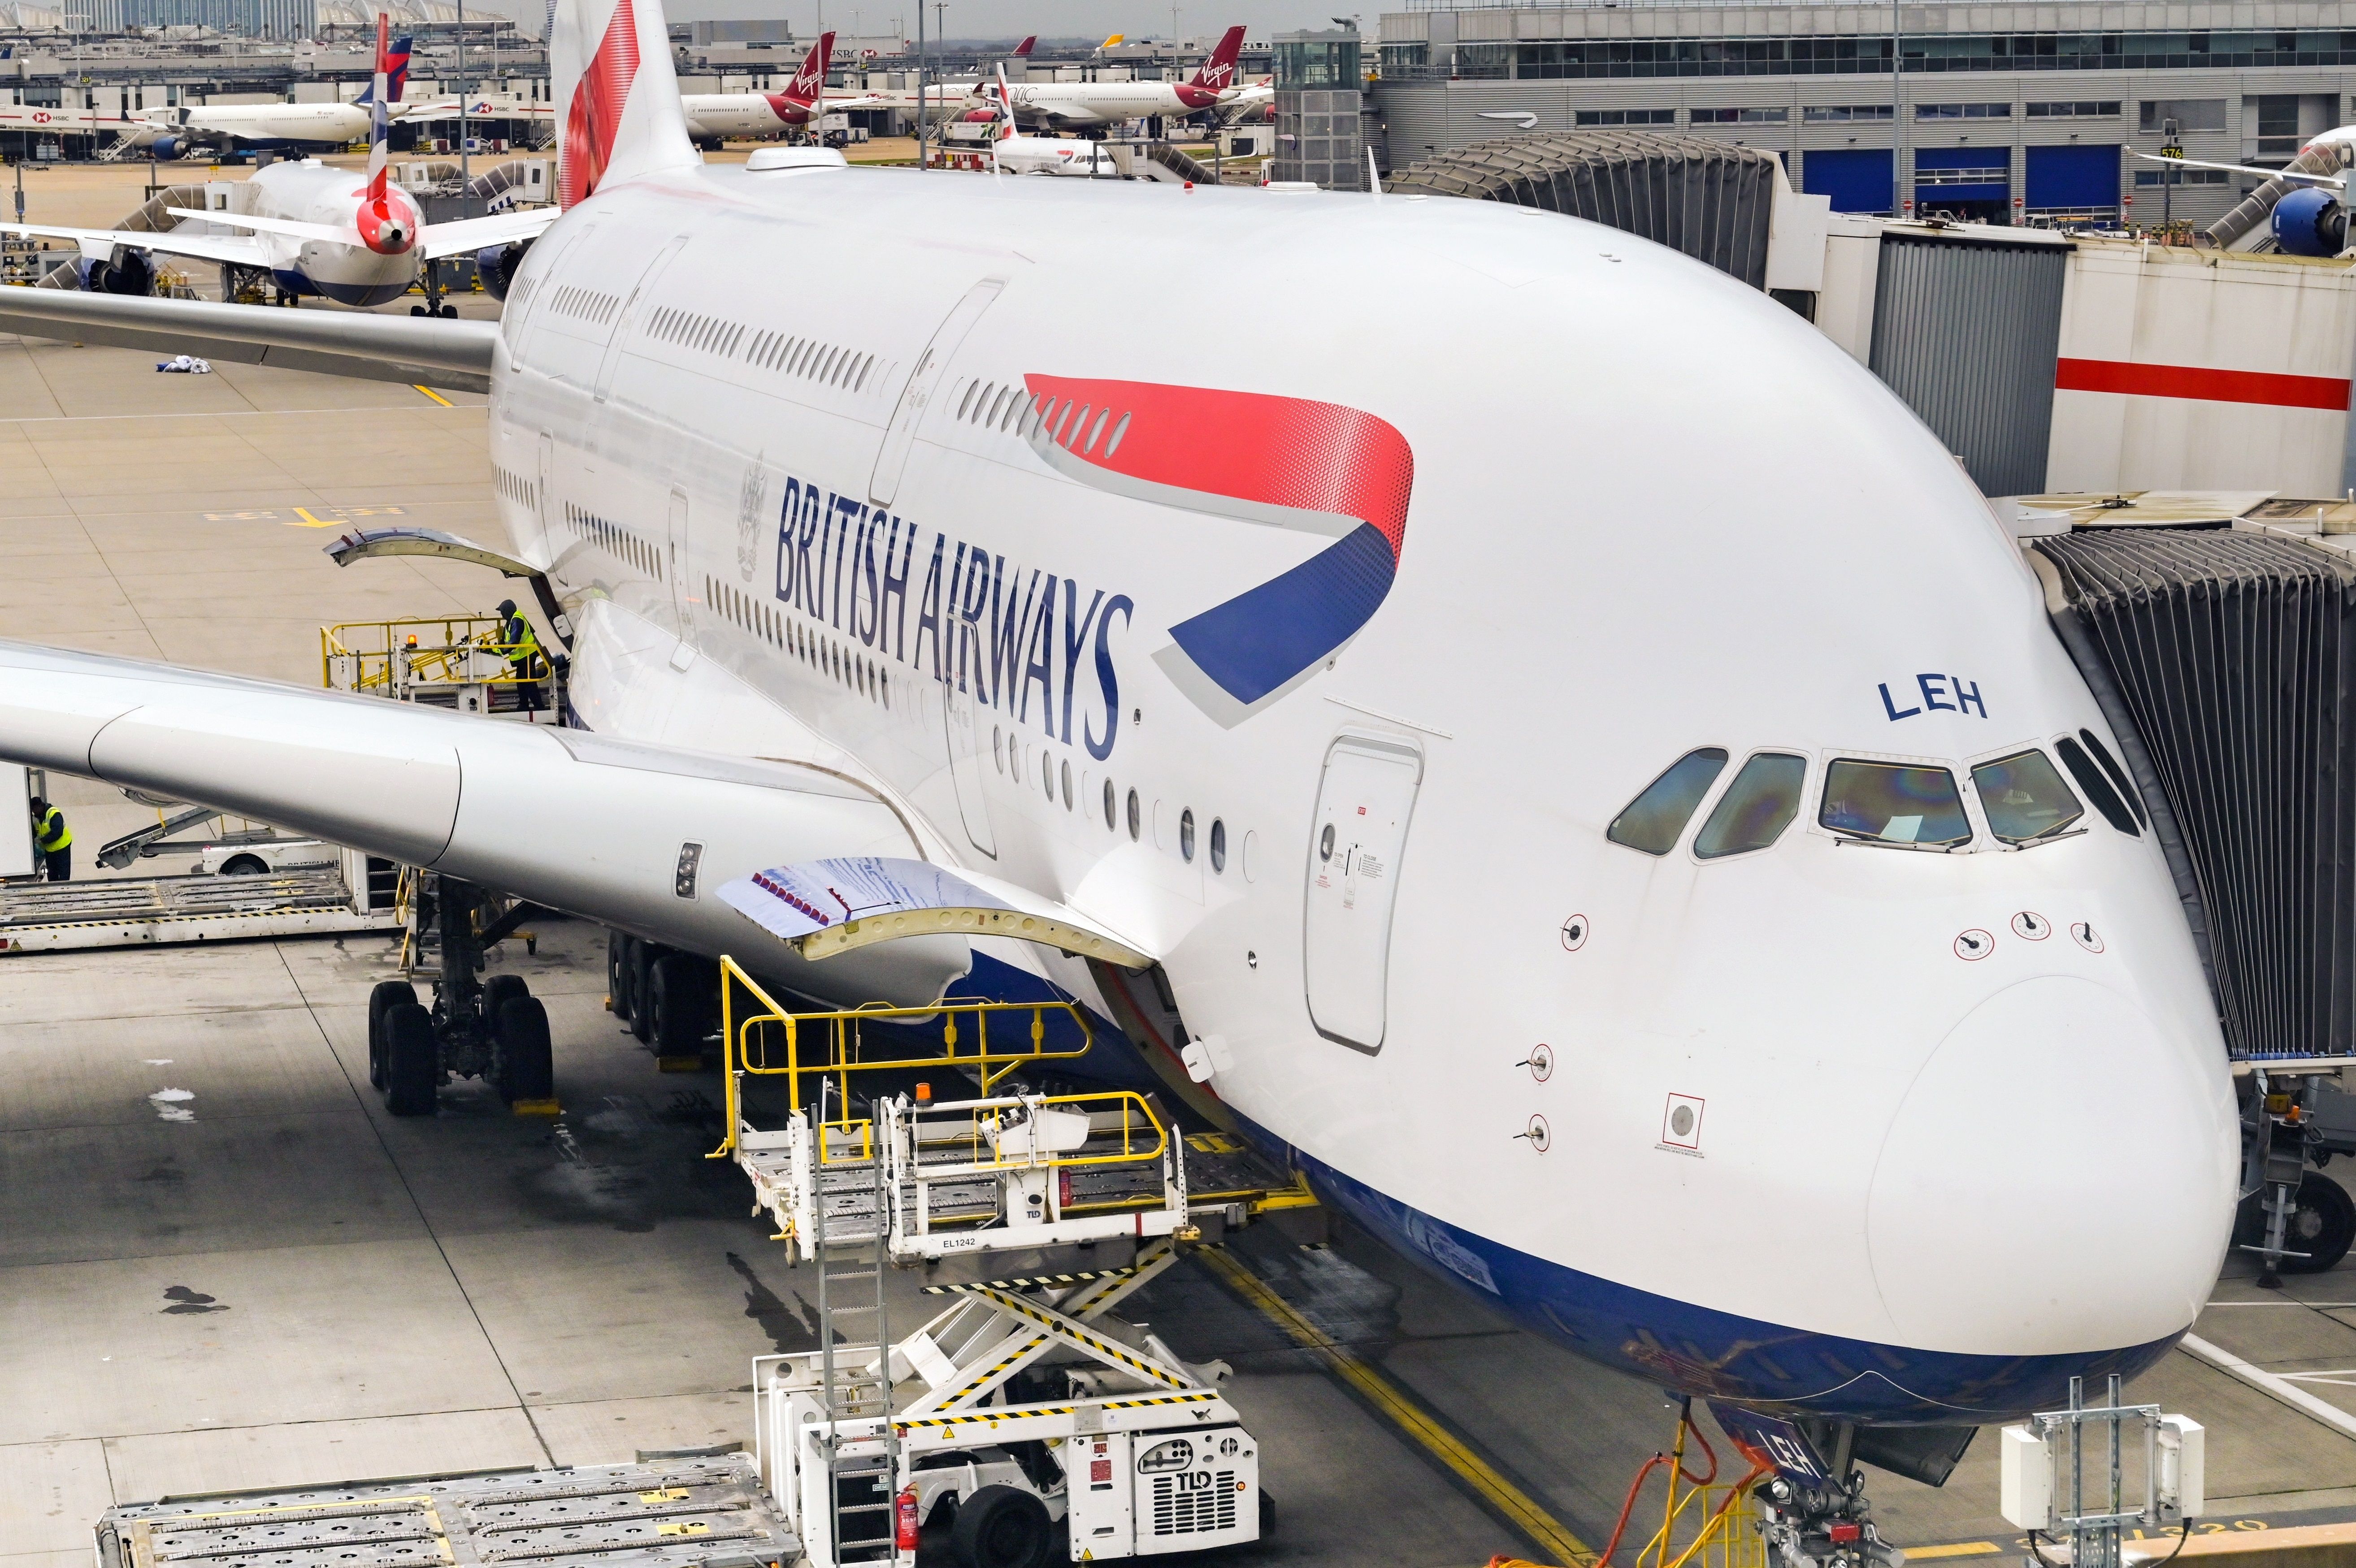 British Airways A380 on stand